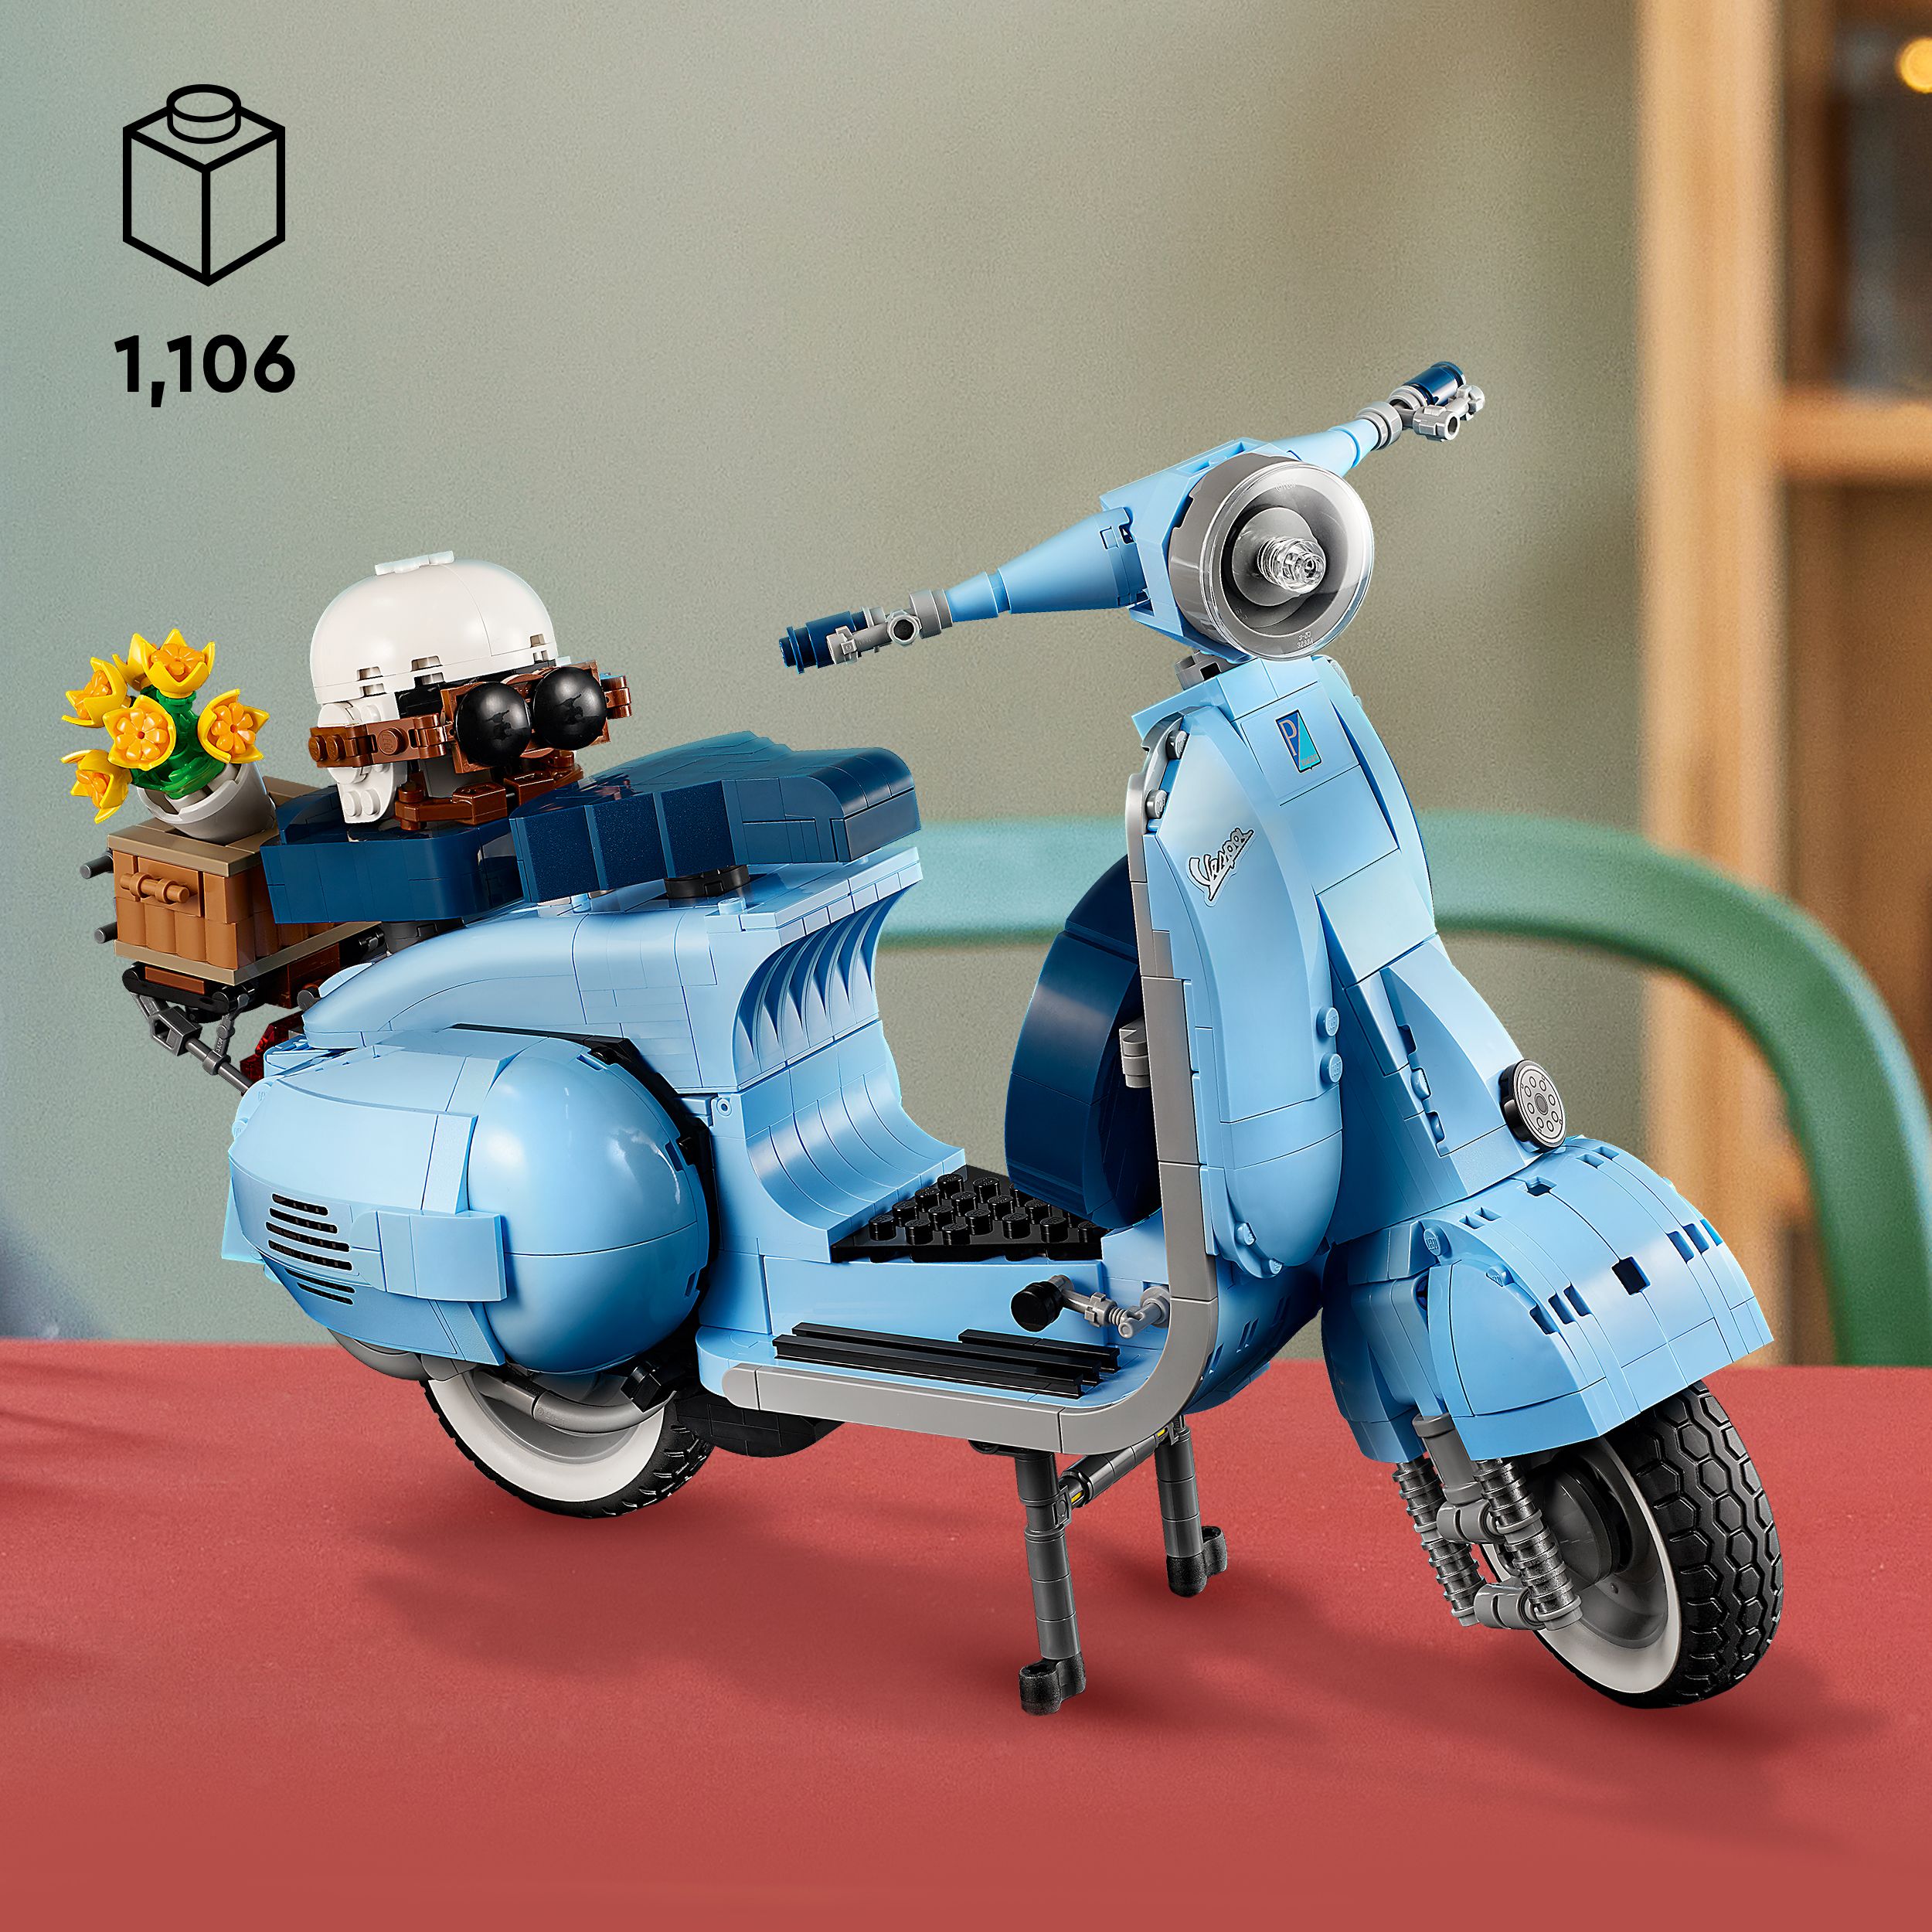 Lego 10298 vespa 125, set in mattoncini, modellismo adulti, replica piaggio  anni 60, idea regalo creativa, hobby rilassante - Toys Center